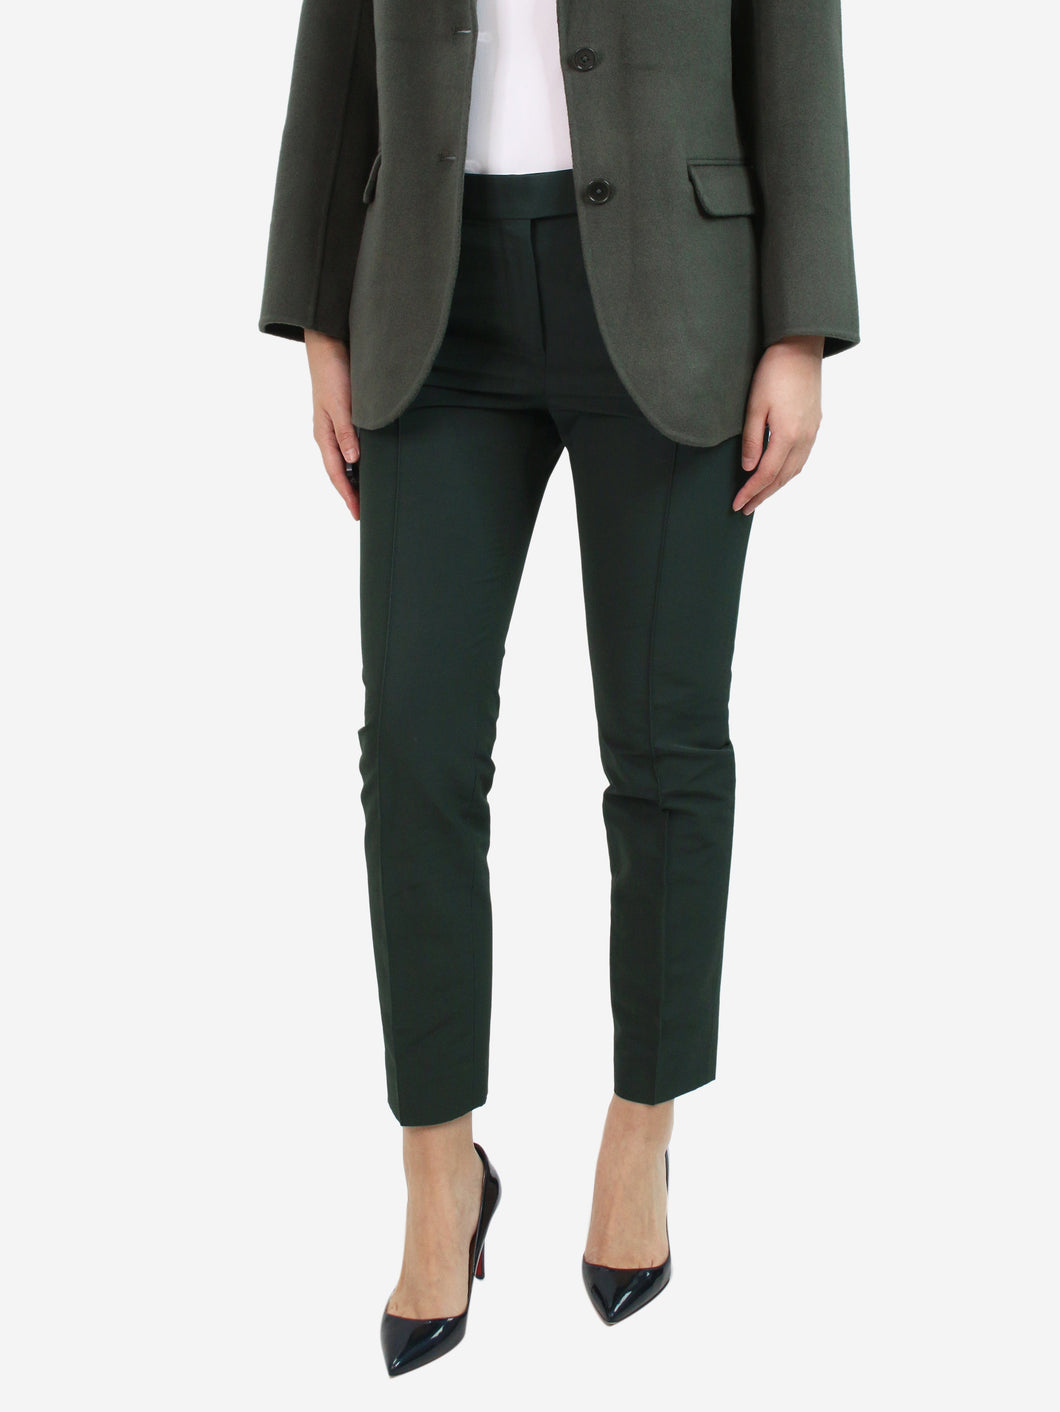 Green slim trousers - size UK 10 Trousers Celine 